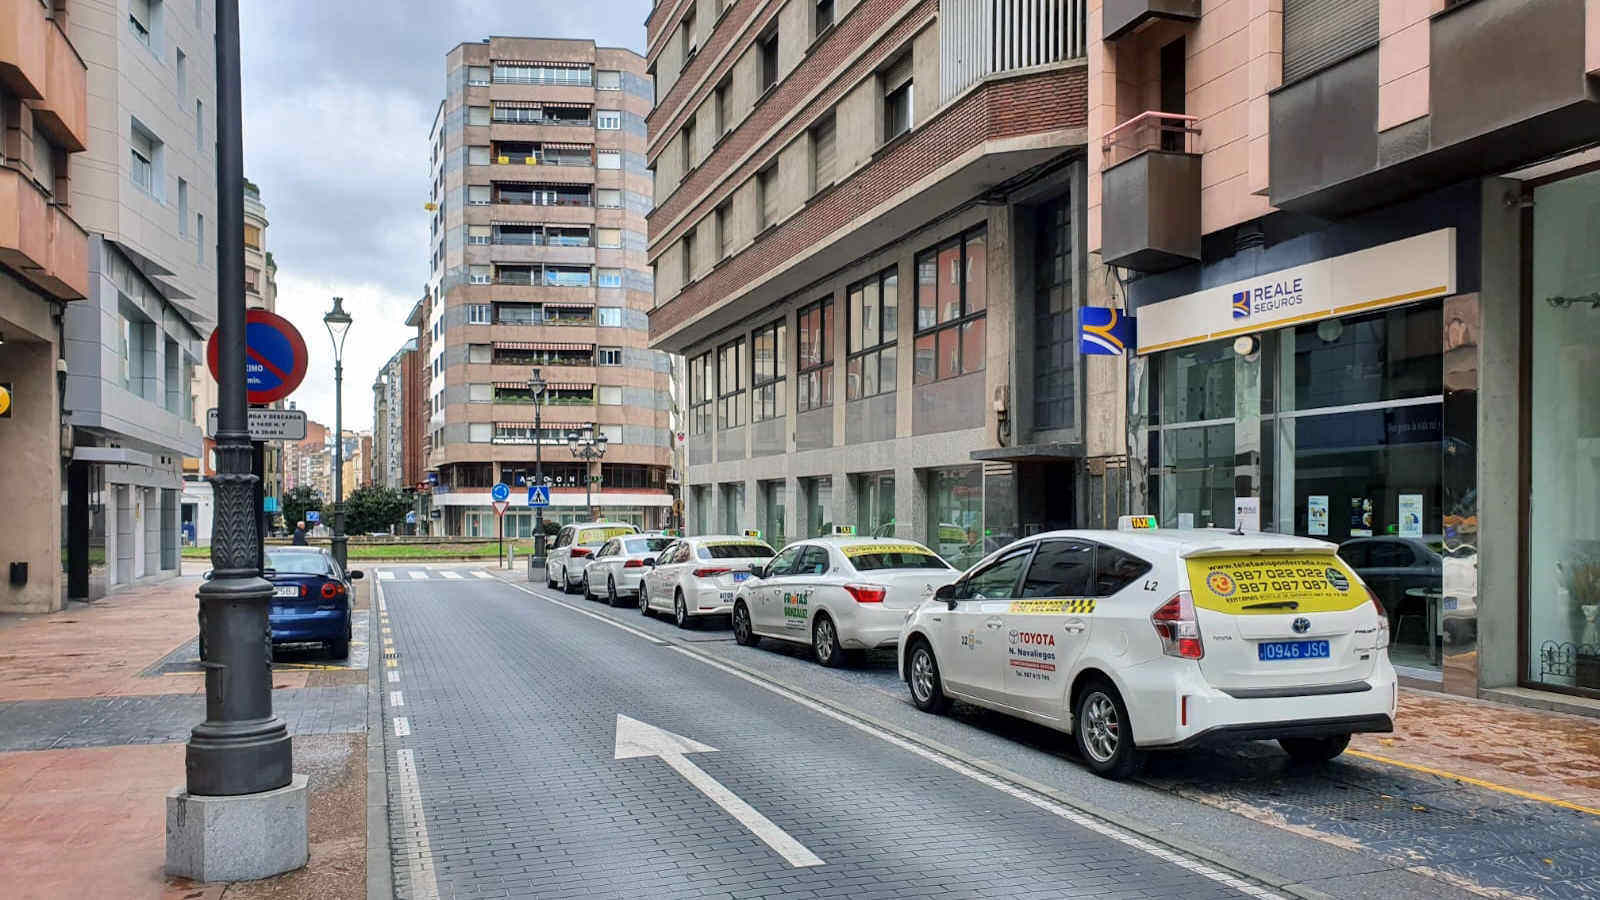 Parada de taxis en Calle Camino de Santiago